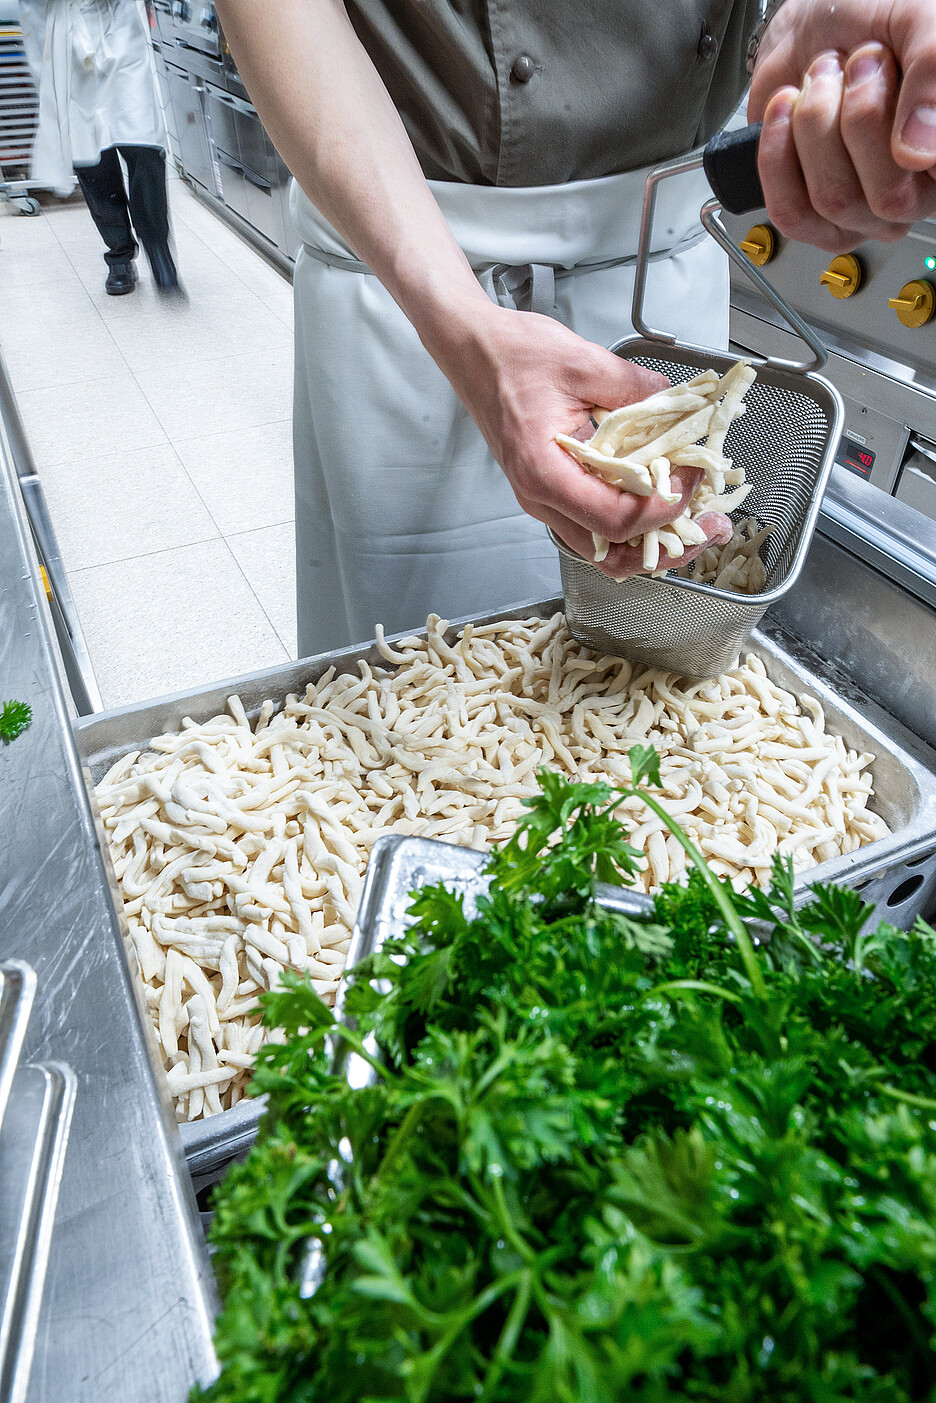 Strozzapreti – eine Spezialität des Hauses, handgemacht, wie die meisten Pastasorten im Luce. Dazu brauchte es eine Produktionsküche im Untergeschoss, die für Events und A la Carte-Service zur Fertigungsküche wird. Die multifunktionale Nutzung – eine Idee der Hugentobler Schweizer Kochsysteme AG.